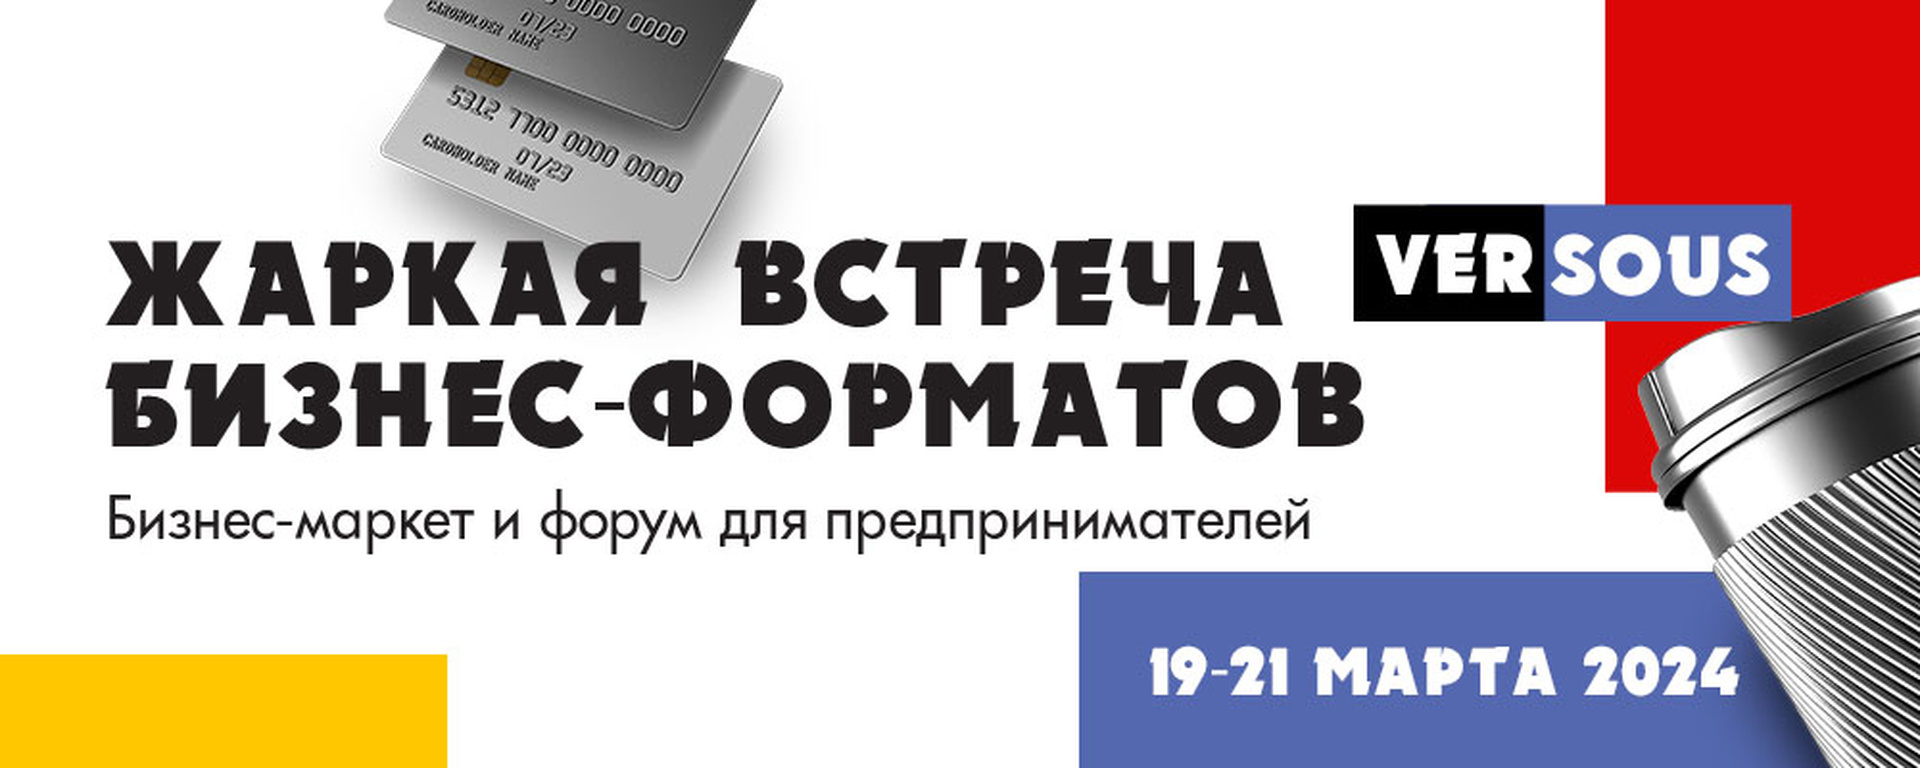 Выставка VERSOUS в Москве 19-21 марта 2024